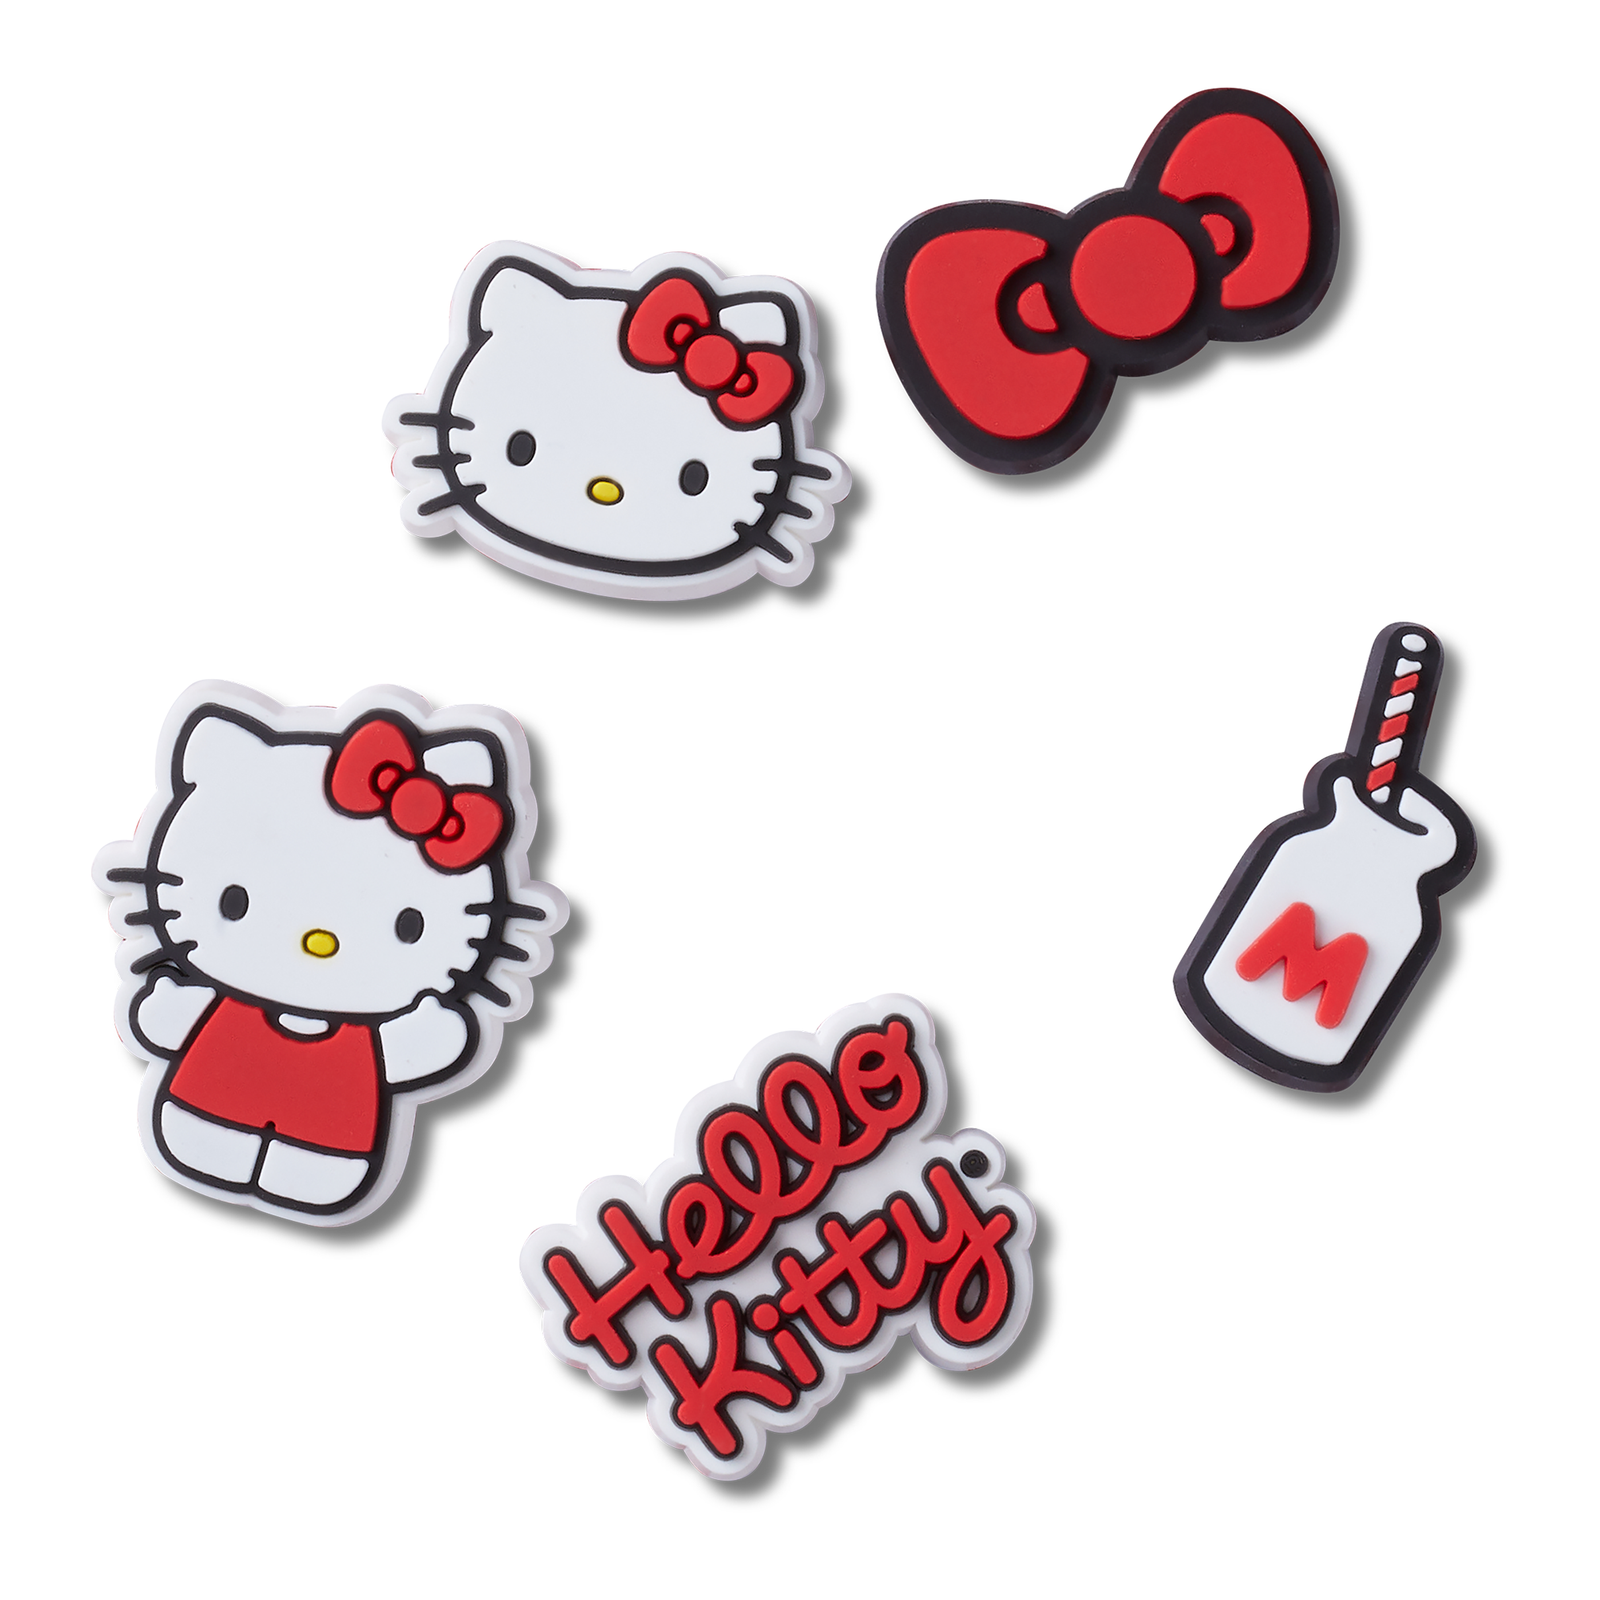 Hello Kitty [H1795] - Gloss 'Hello Kitty' turquoise + accessoire telephone  | Gloss 'Hello Kitty' turquoise + phone accessory. | Gloss 'Hello Kitty